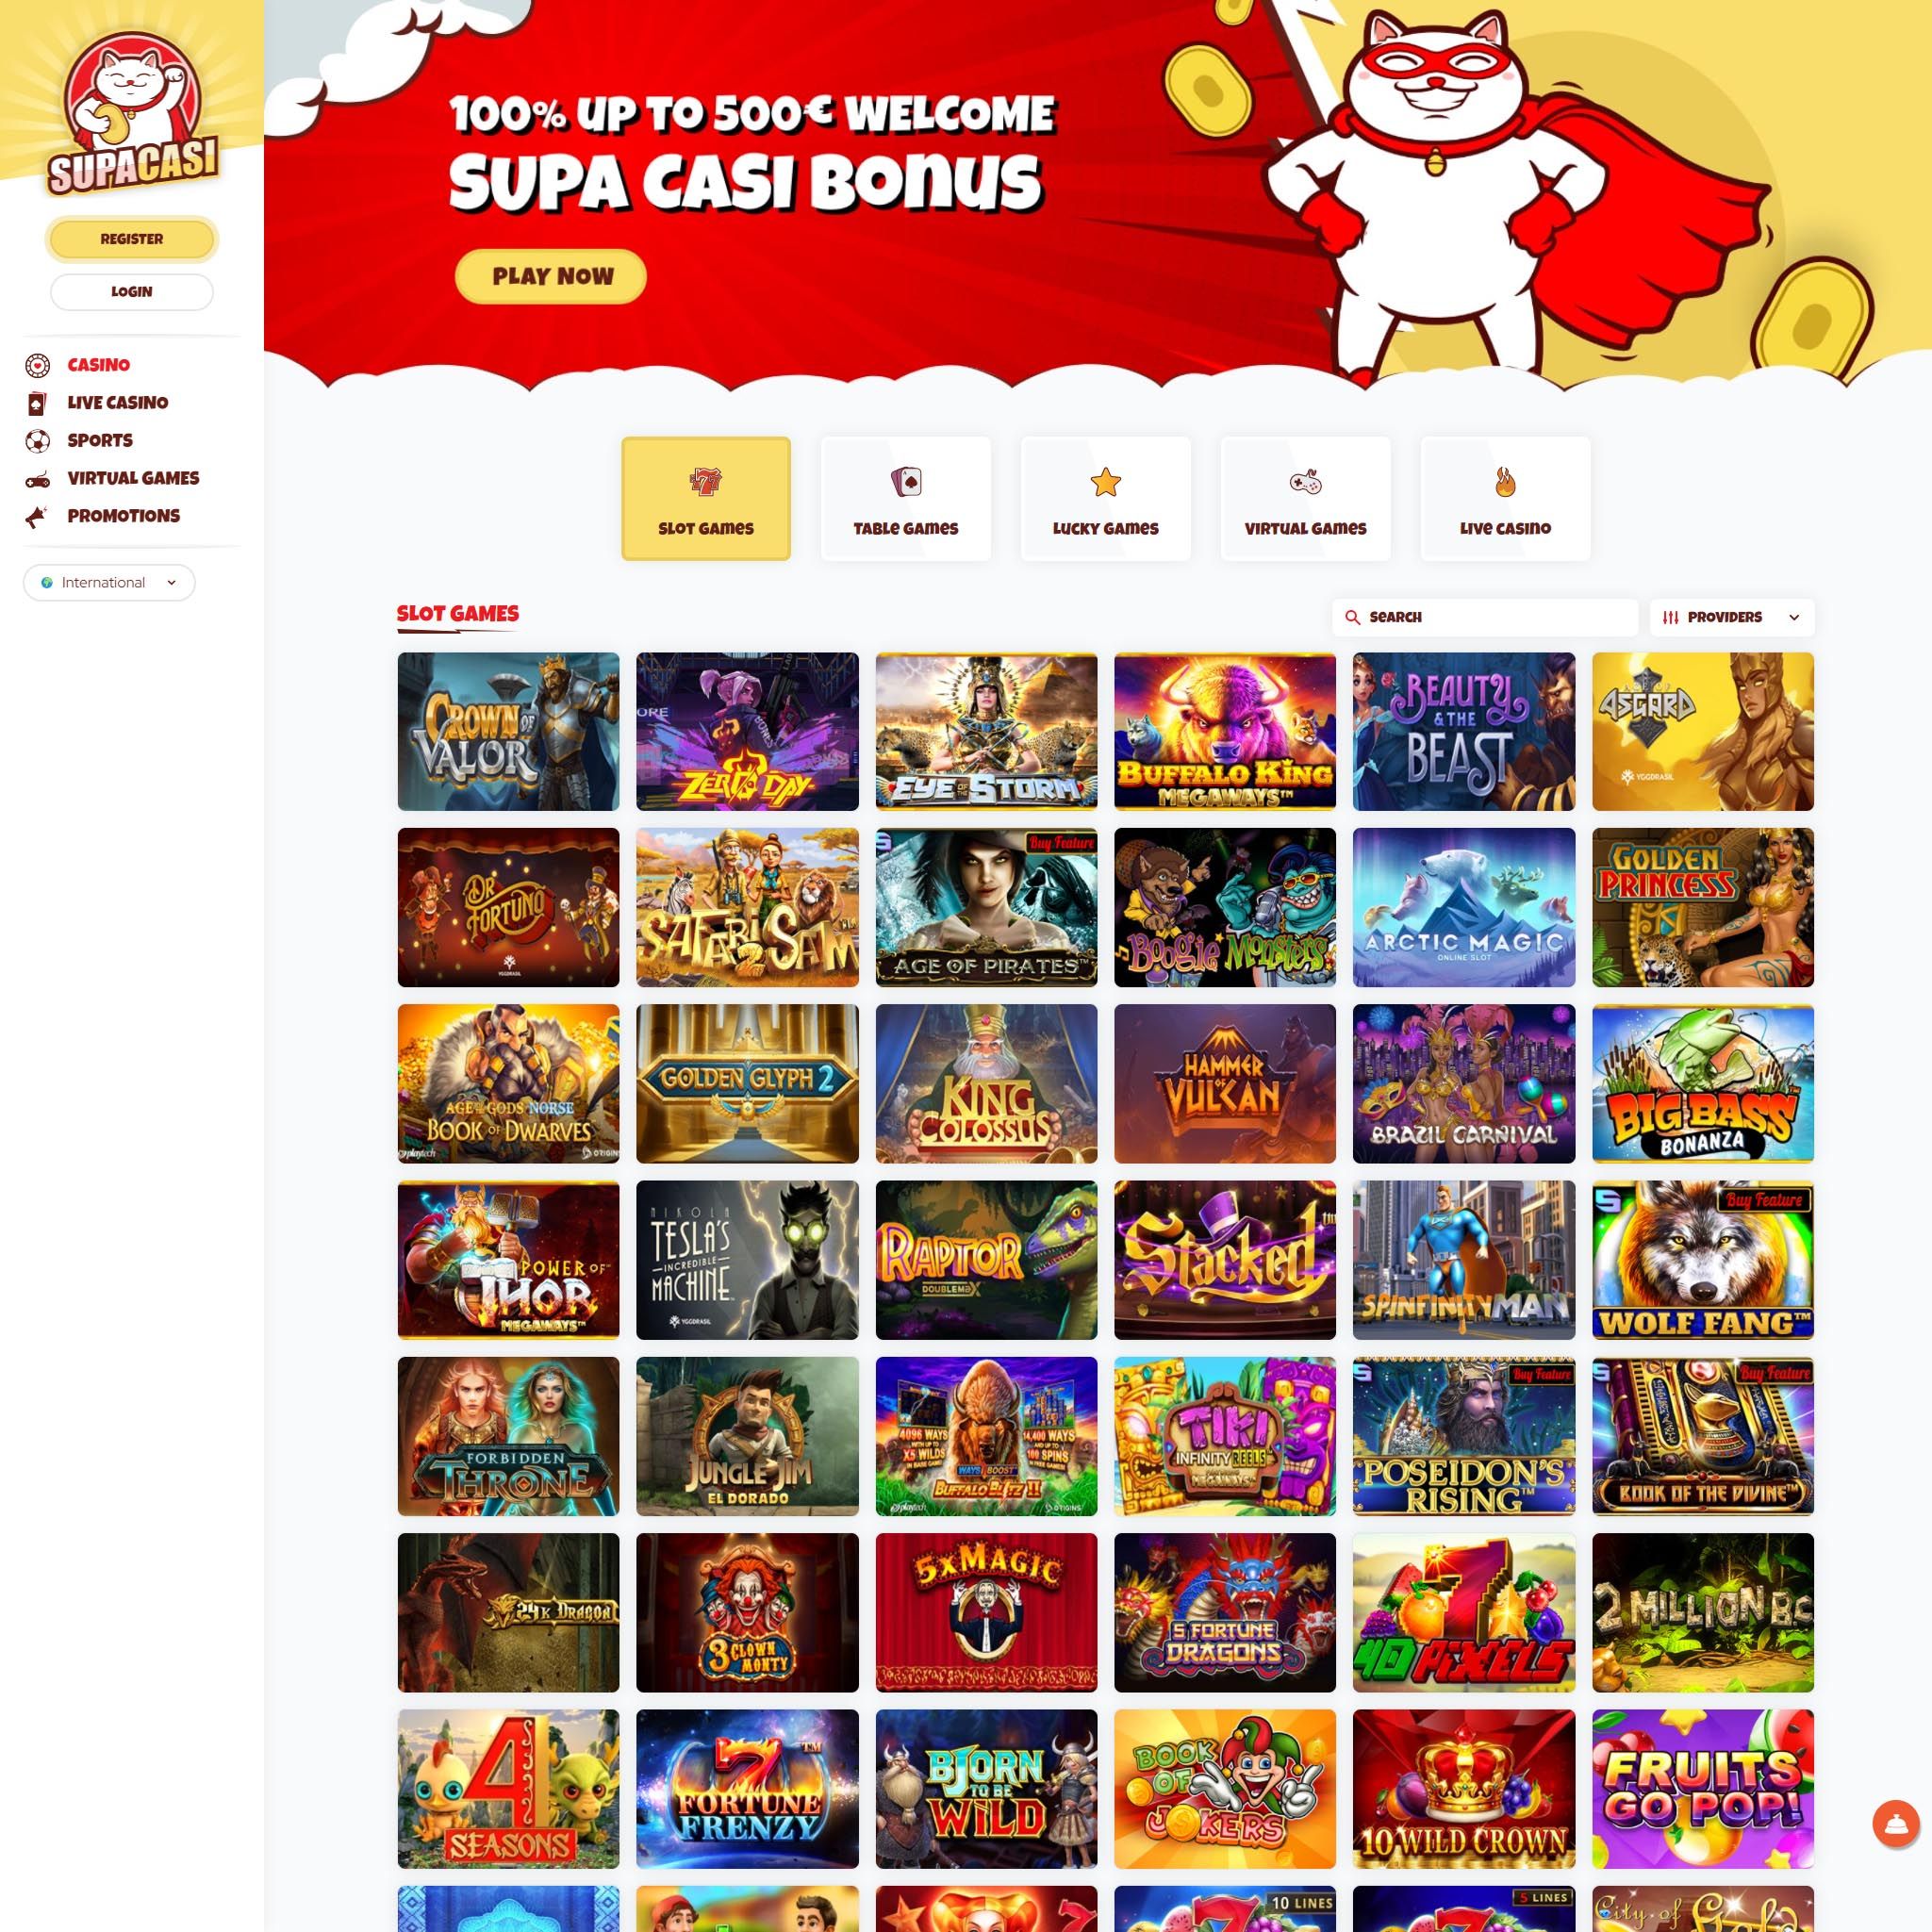 Find Supacasi game catalog